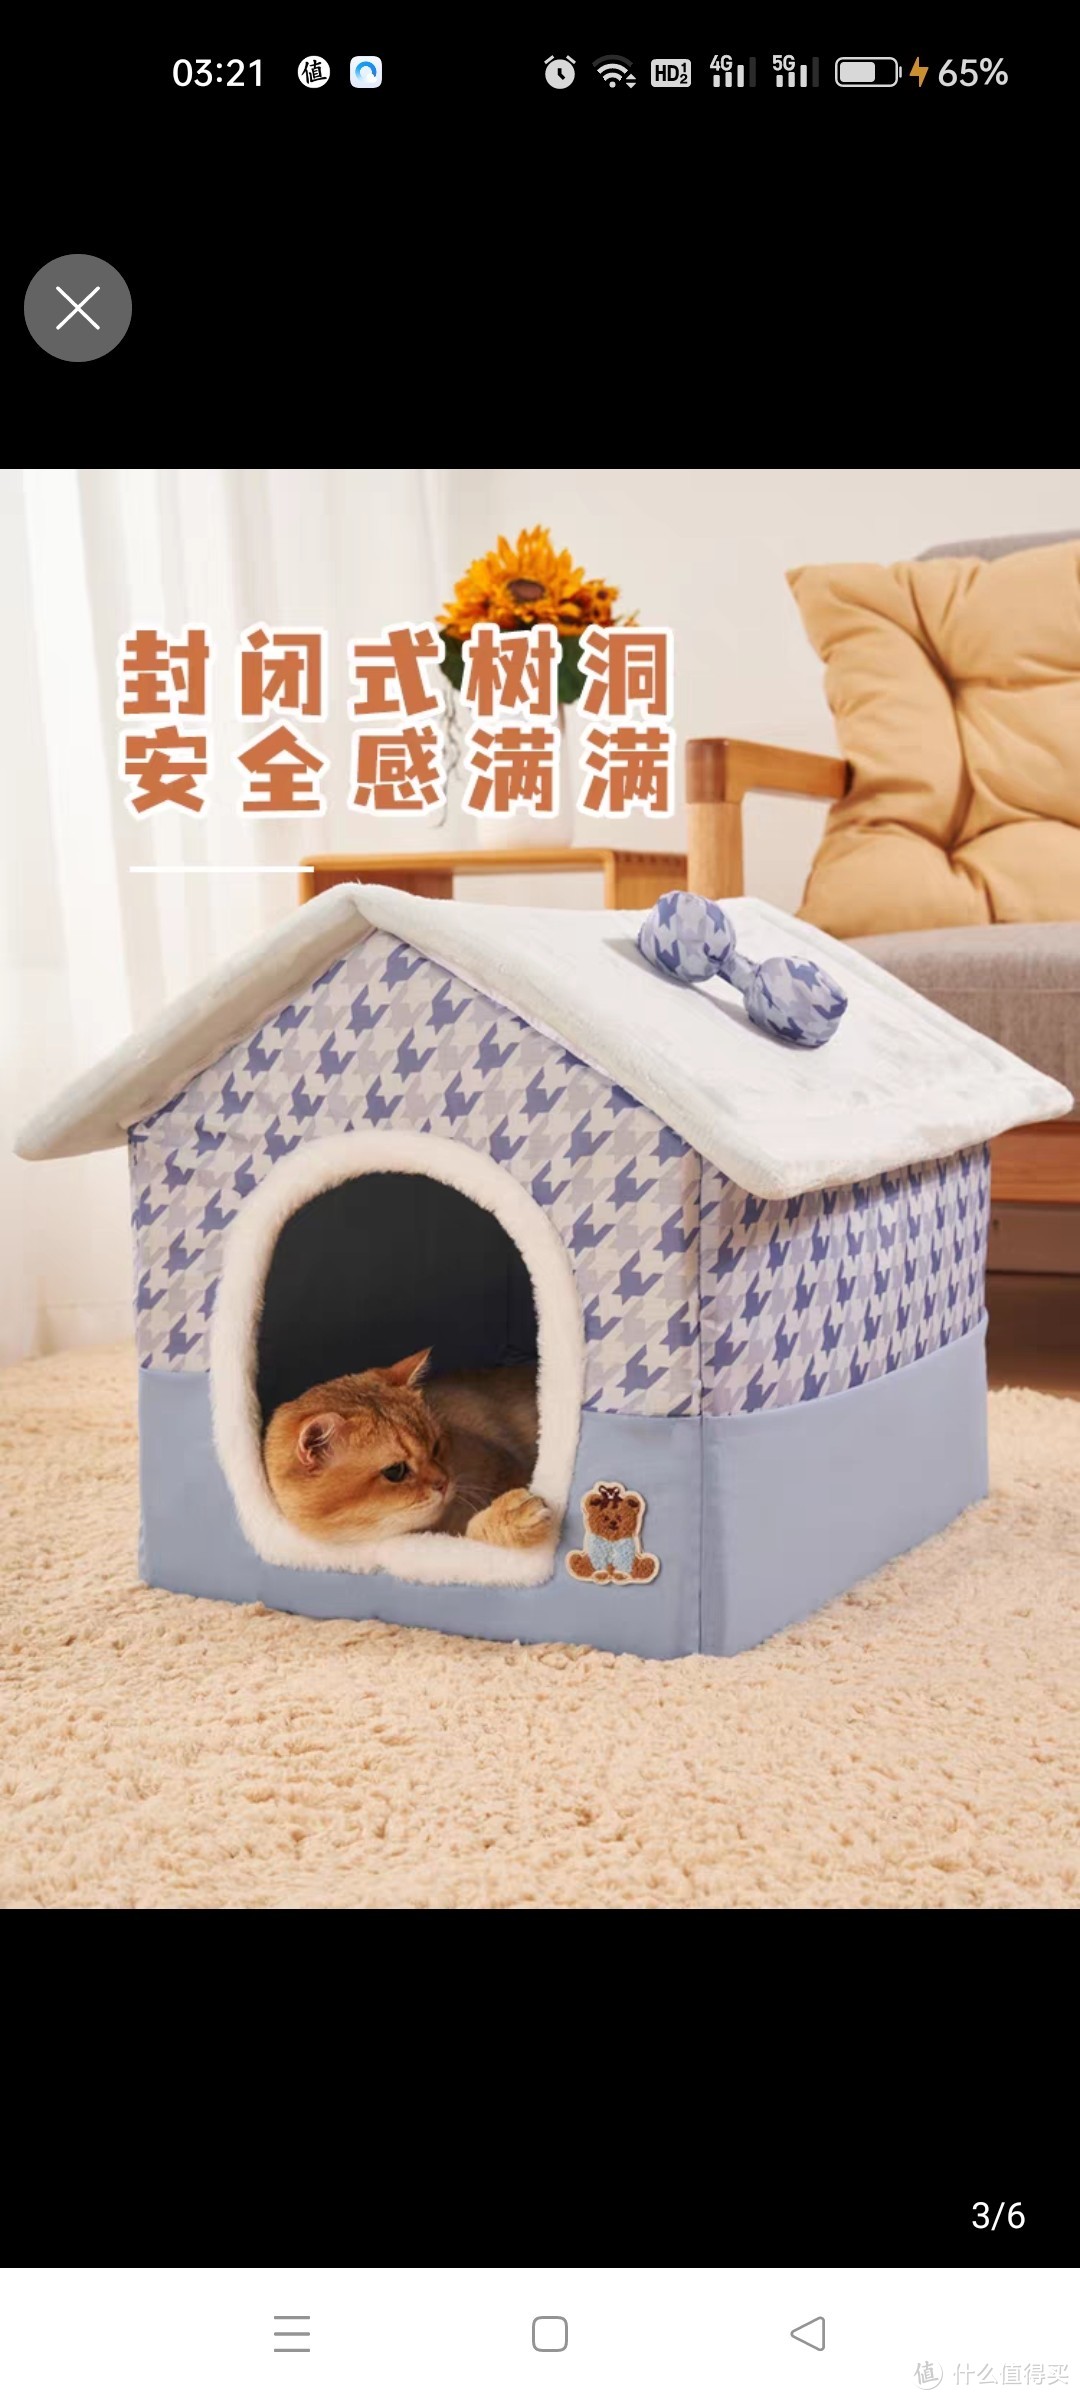 猫窝房子型四季通用幼猫小型犬冬天保暖可拆洗